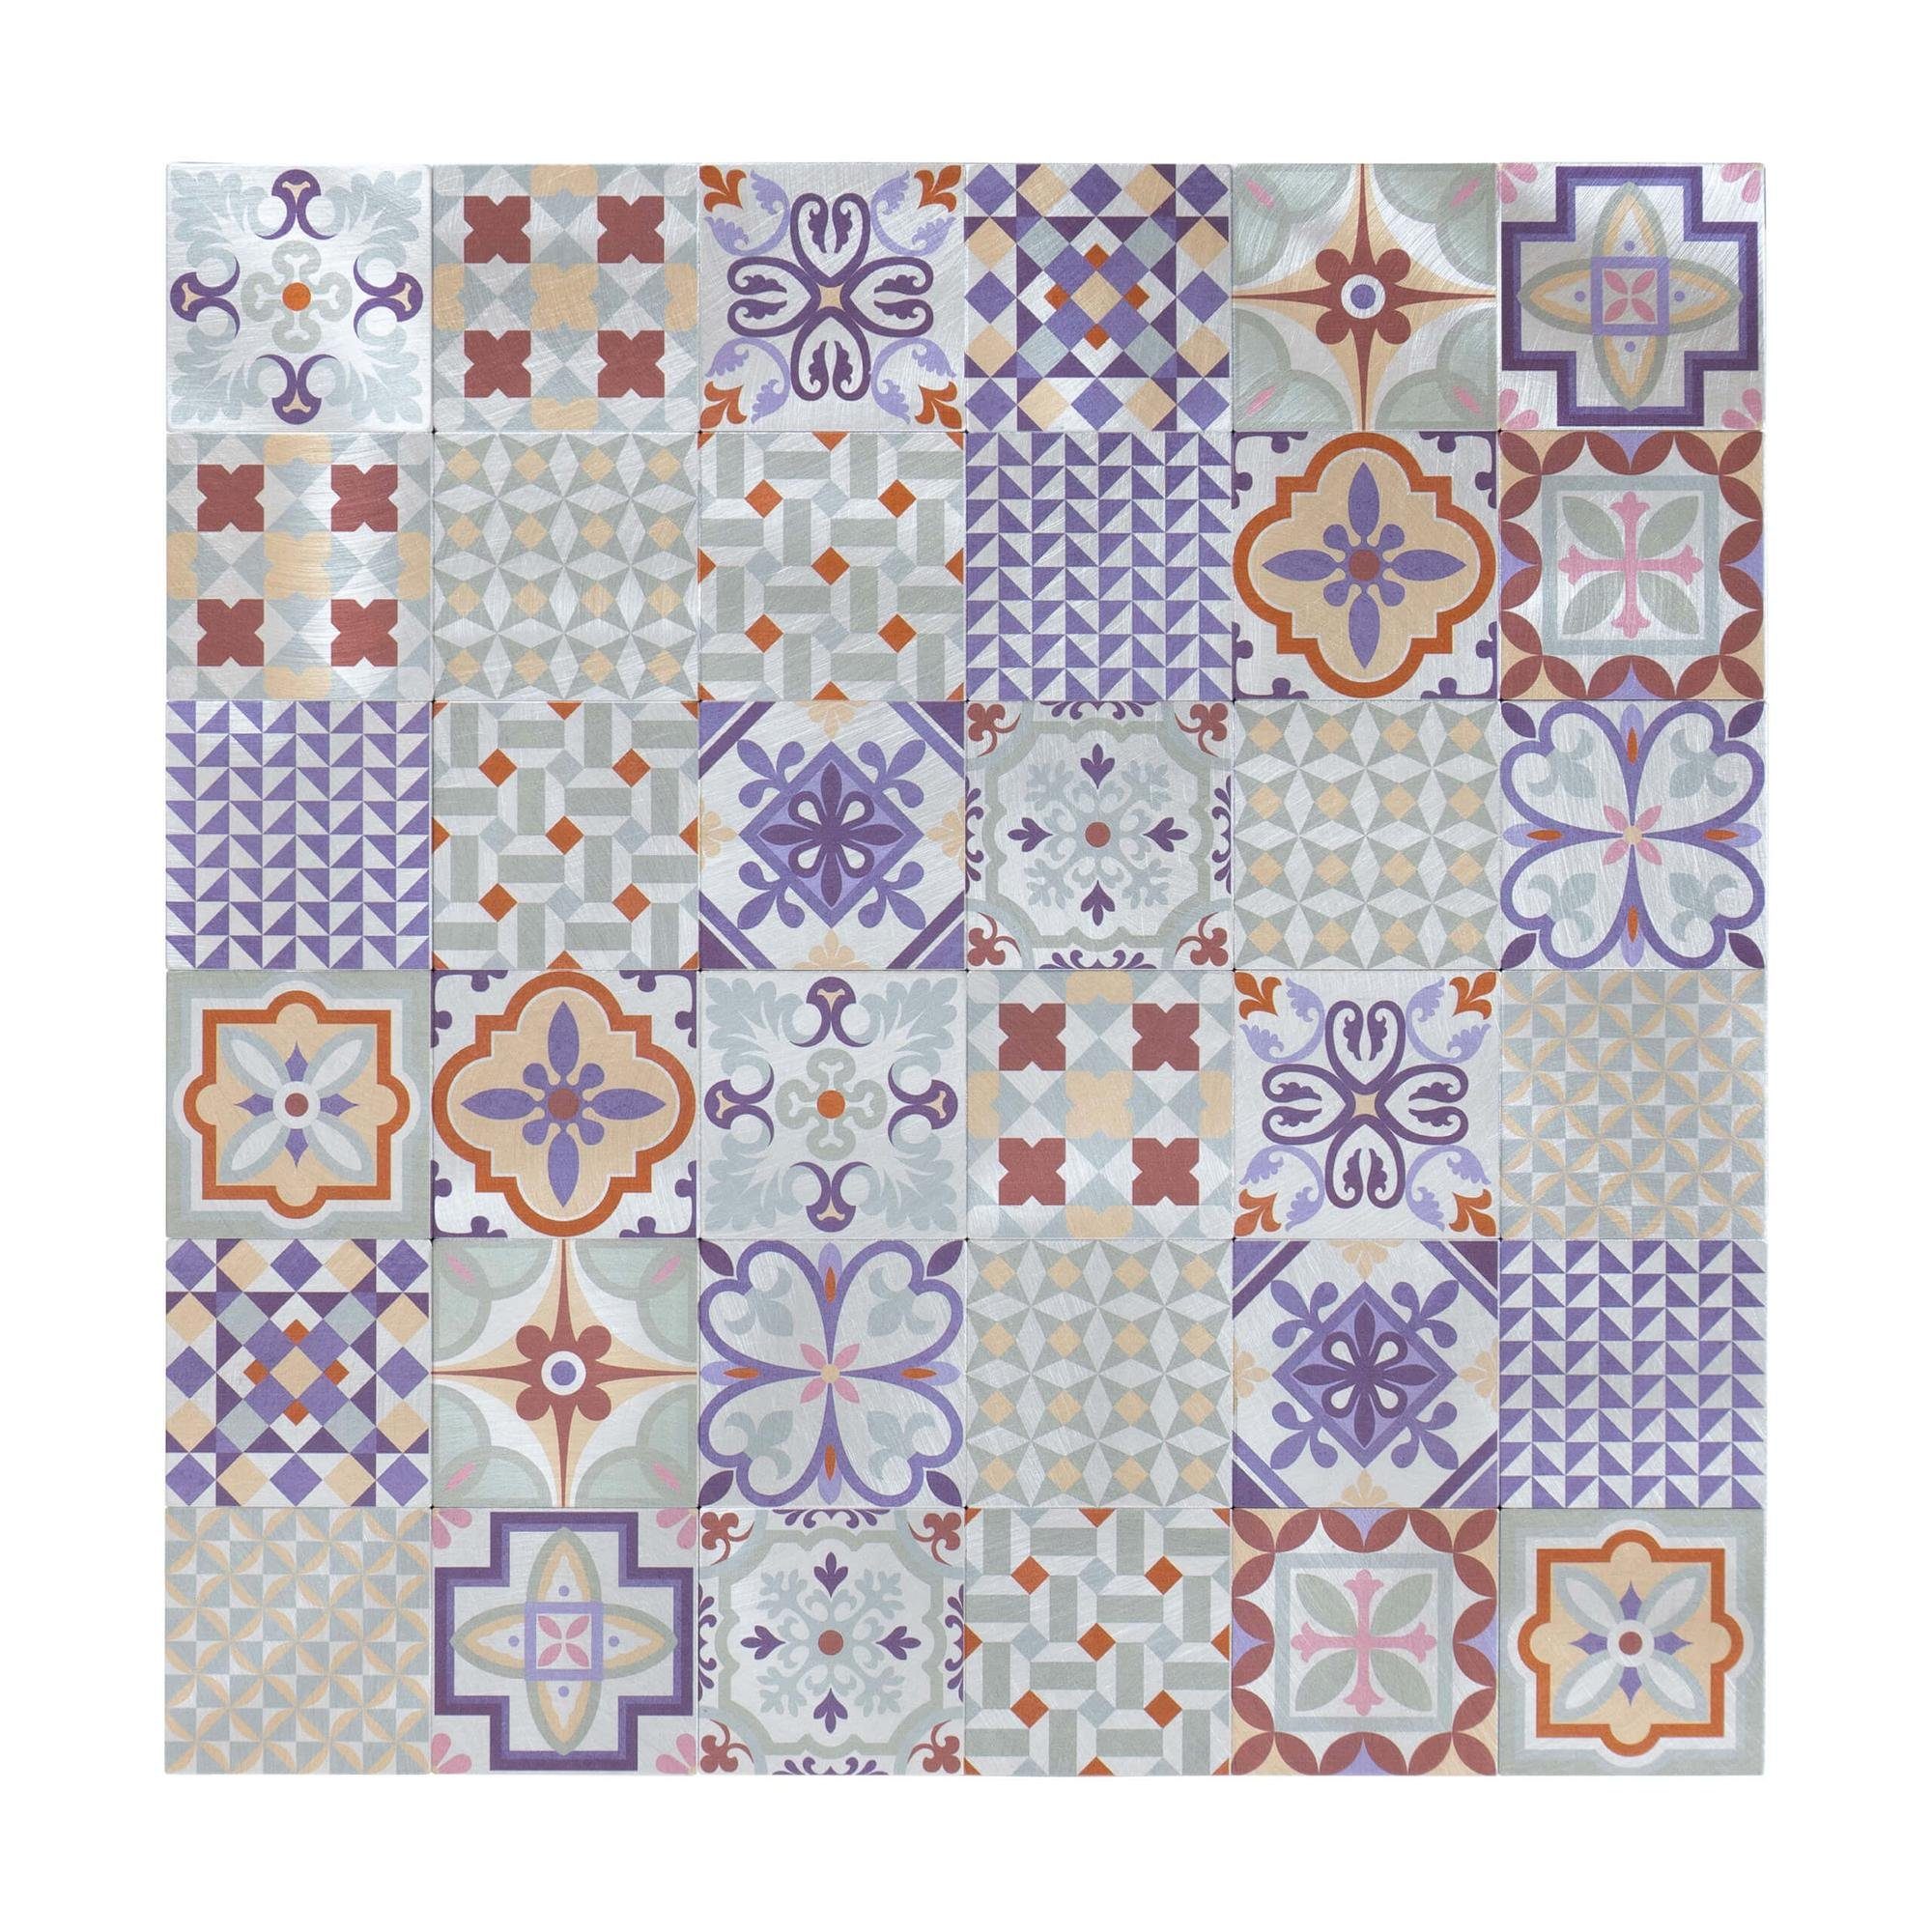 Dalsys Wandpaneel 1m² 11 Stück selbstklebend, (Faro Mosaikfliesen mit bunten Ornamenten, 11-tlg., Wandfliese) feuchtigskeitsbeständig, einfach montiert, hochwertiges Material